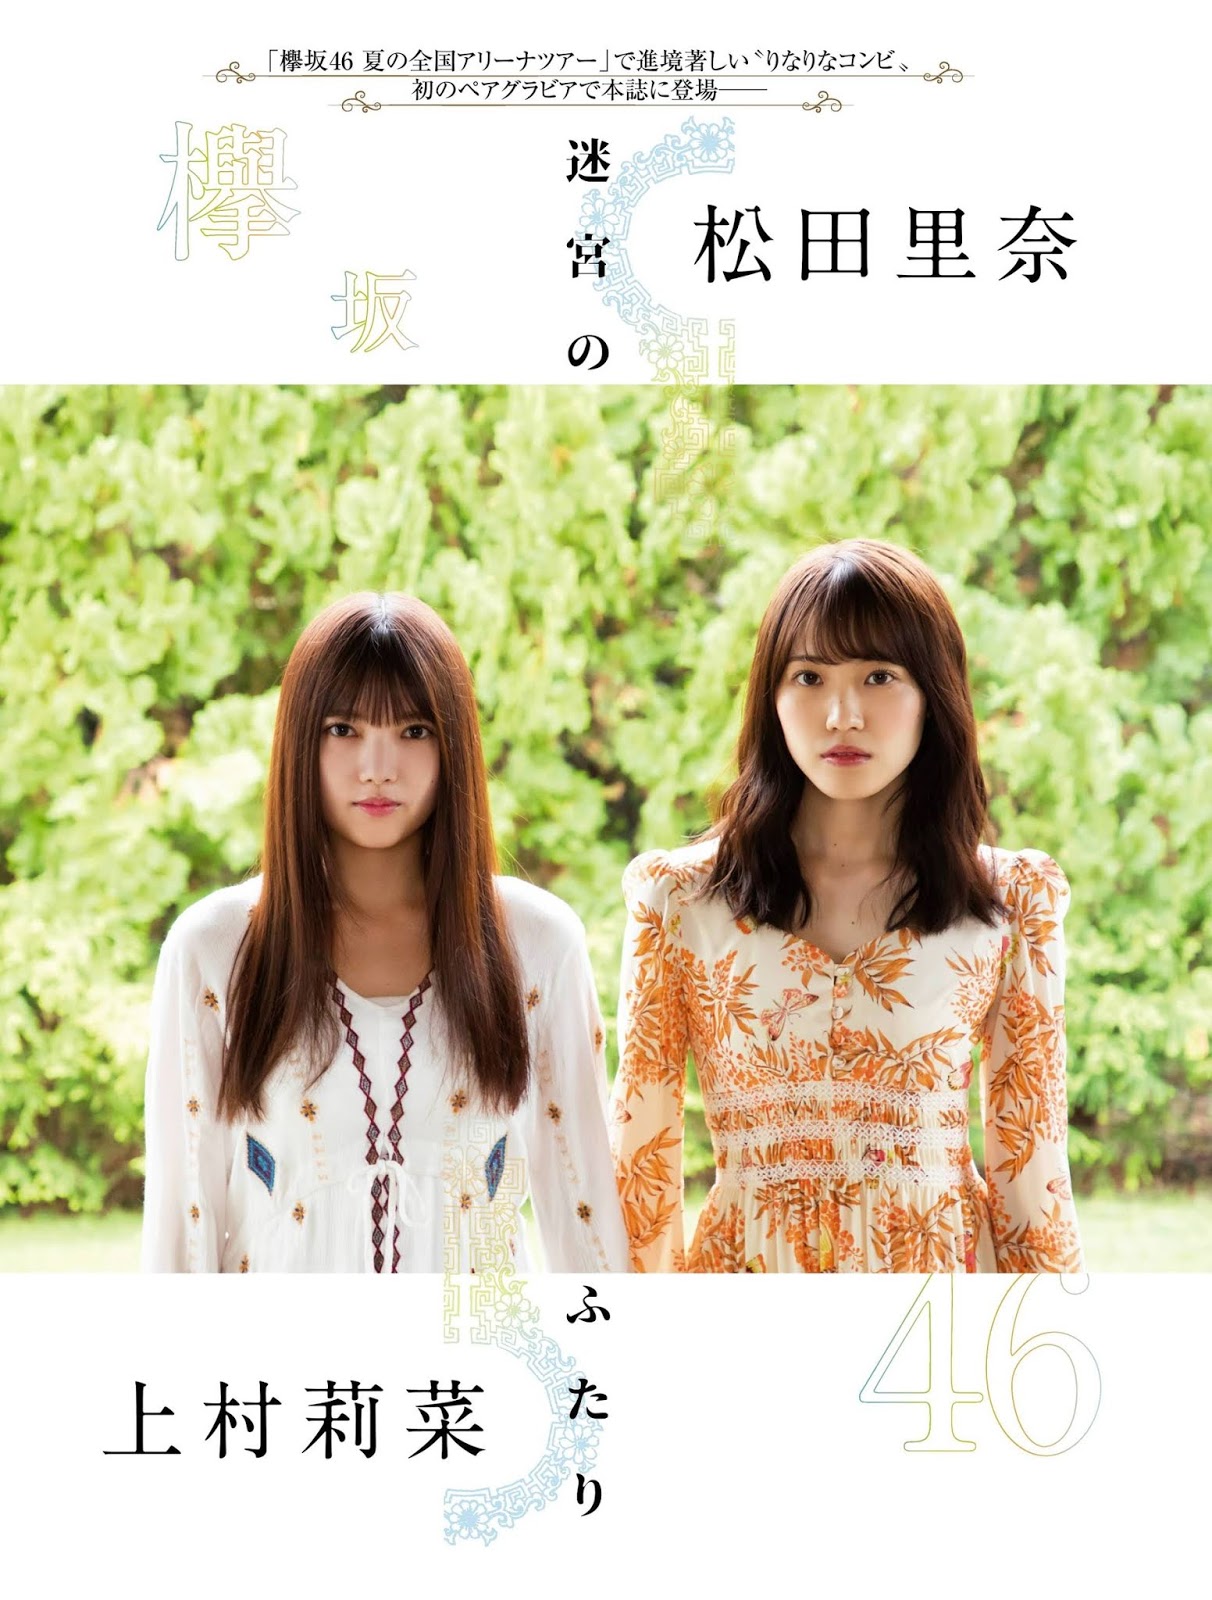 Rina Uemura 上村莉菜, Rina Matsuda 松田里奈, Platinum Flash 2019 Vol.11